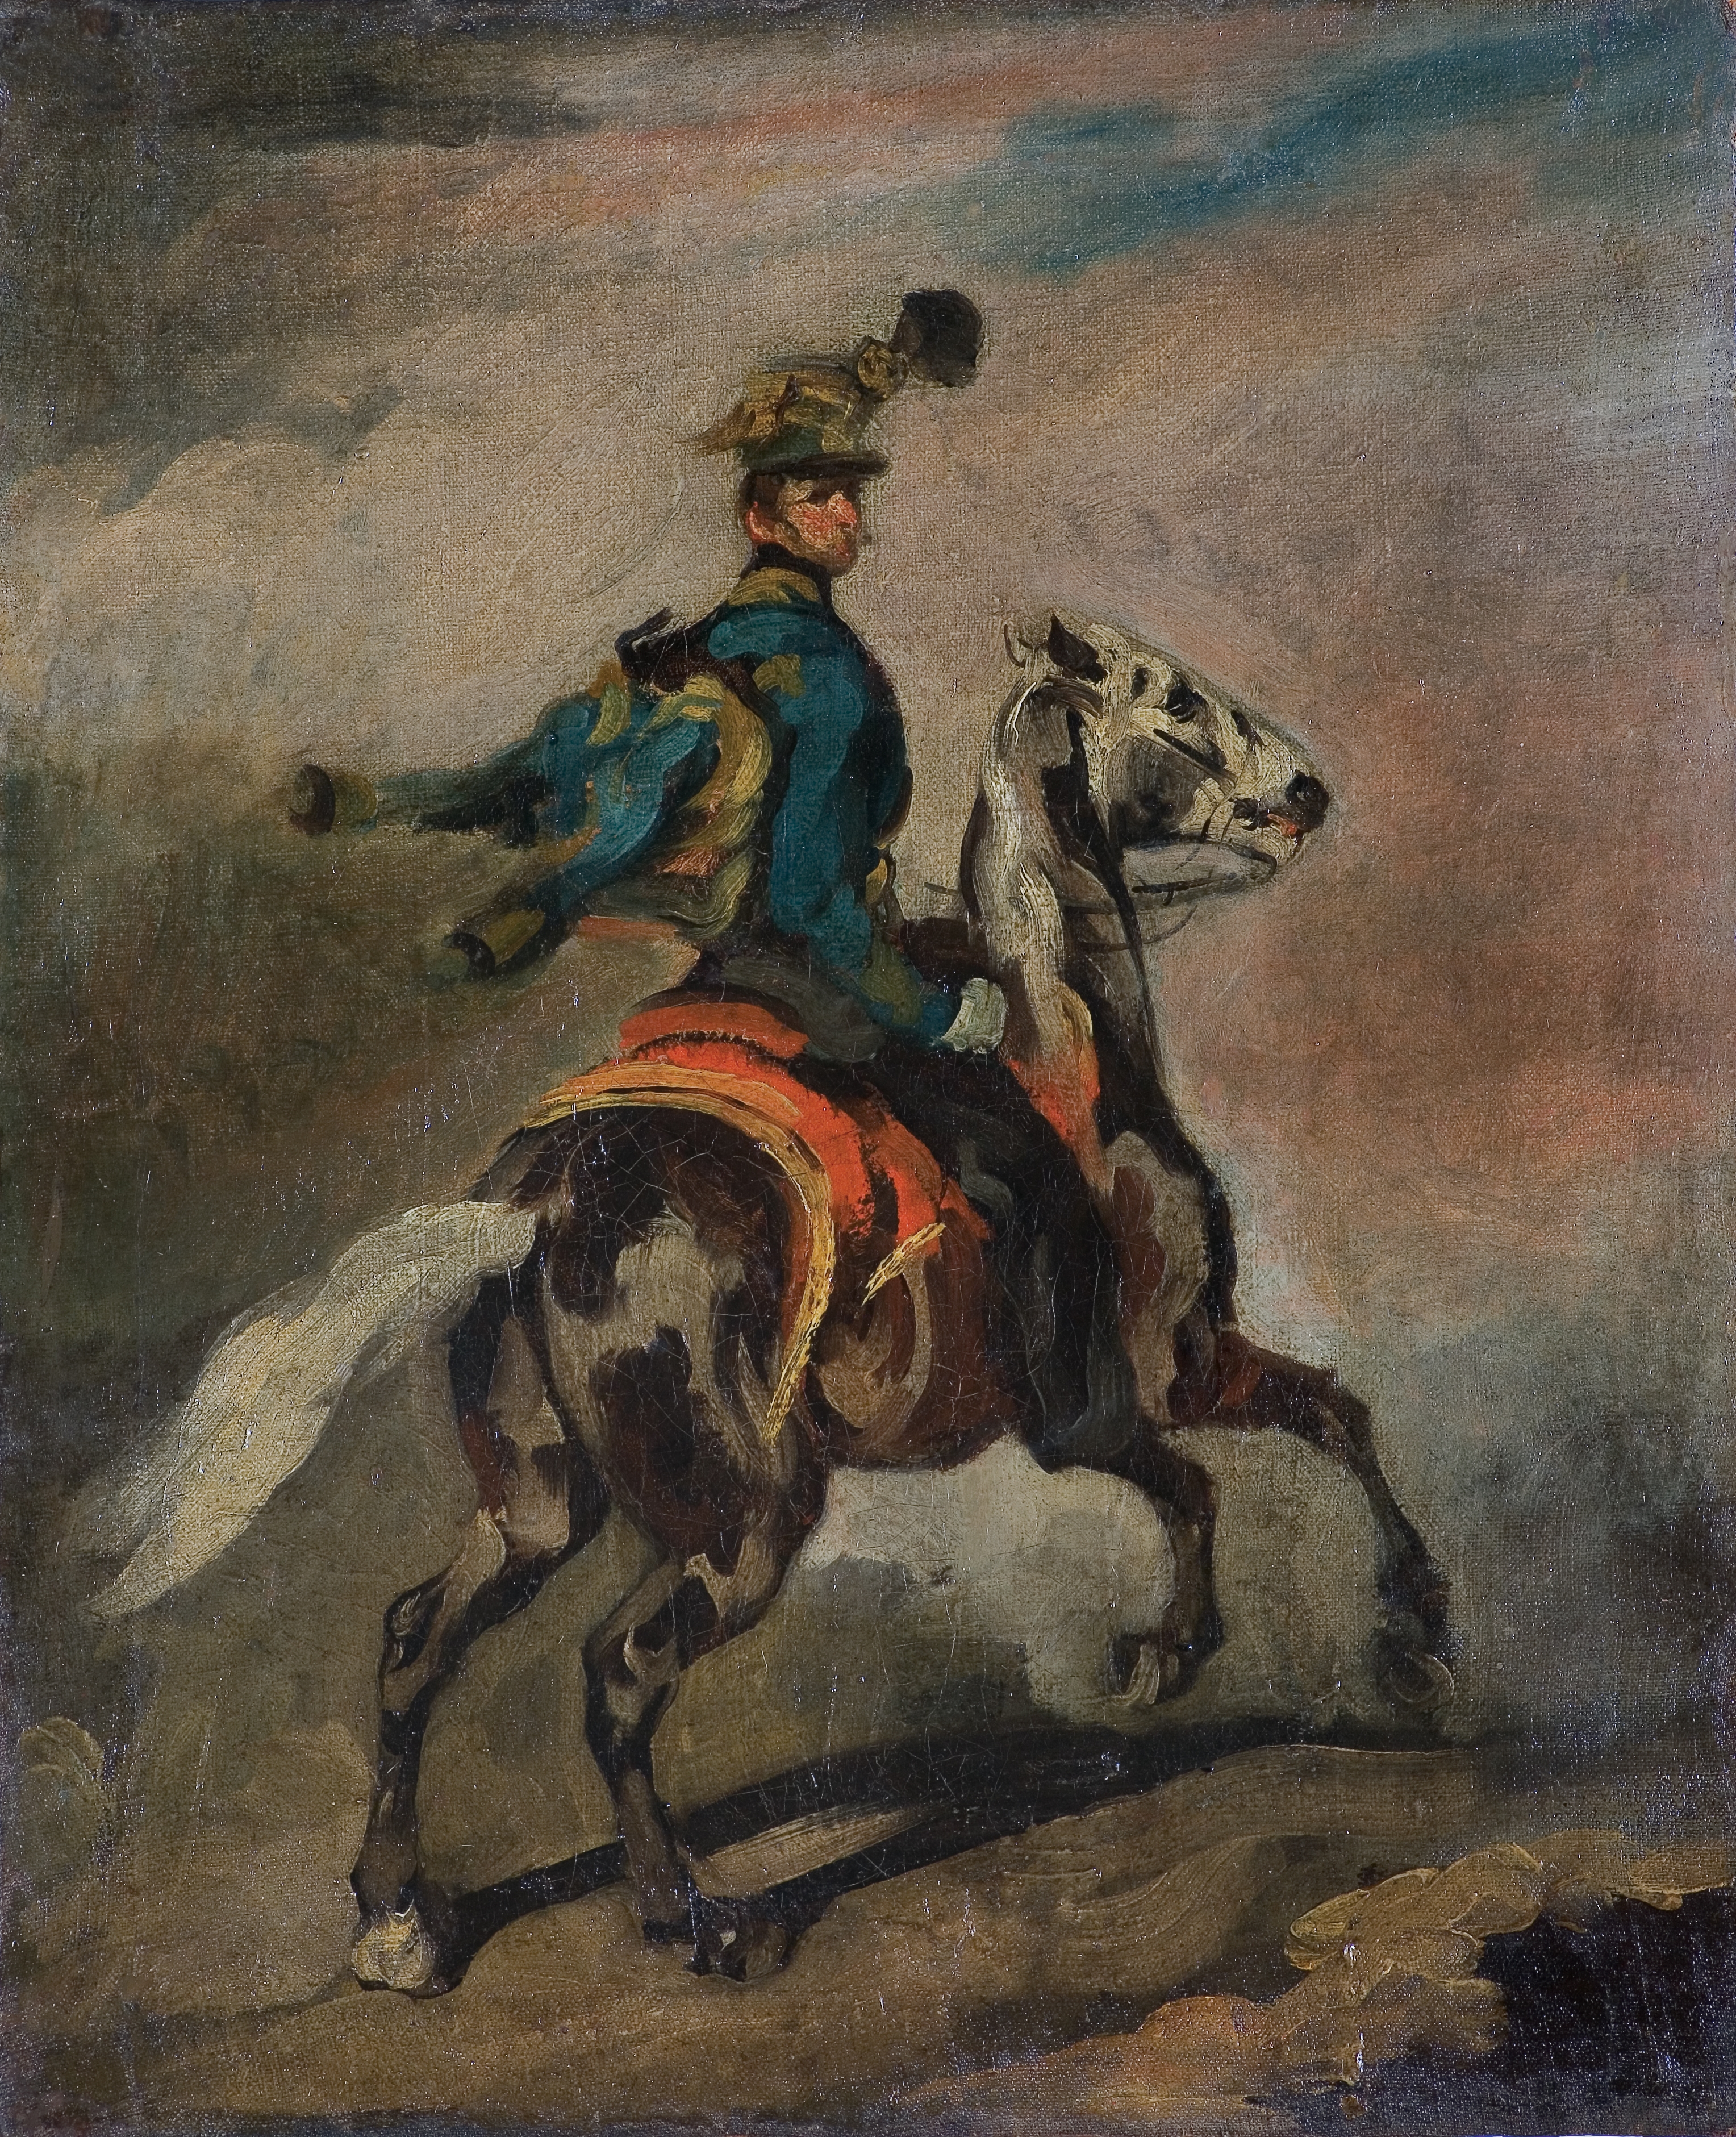 BŁĘKITNY HUZAR, HUZAR AUSTRIACKI NA KONIU by Piotr Michałowski, 1836